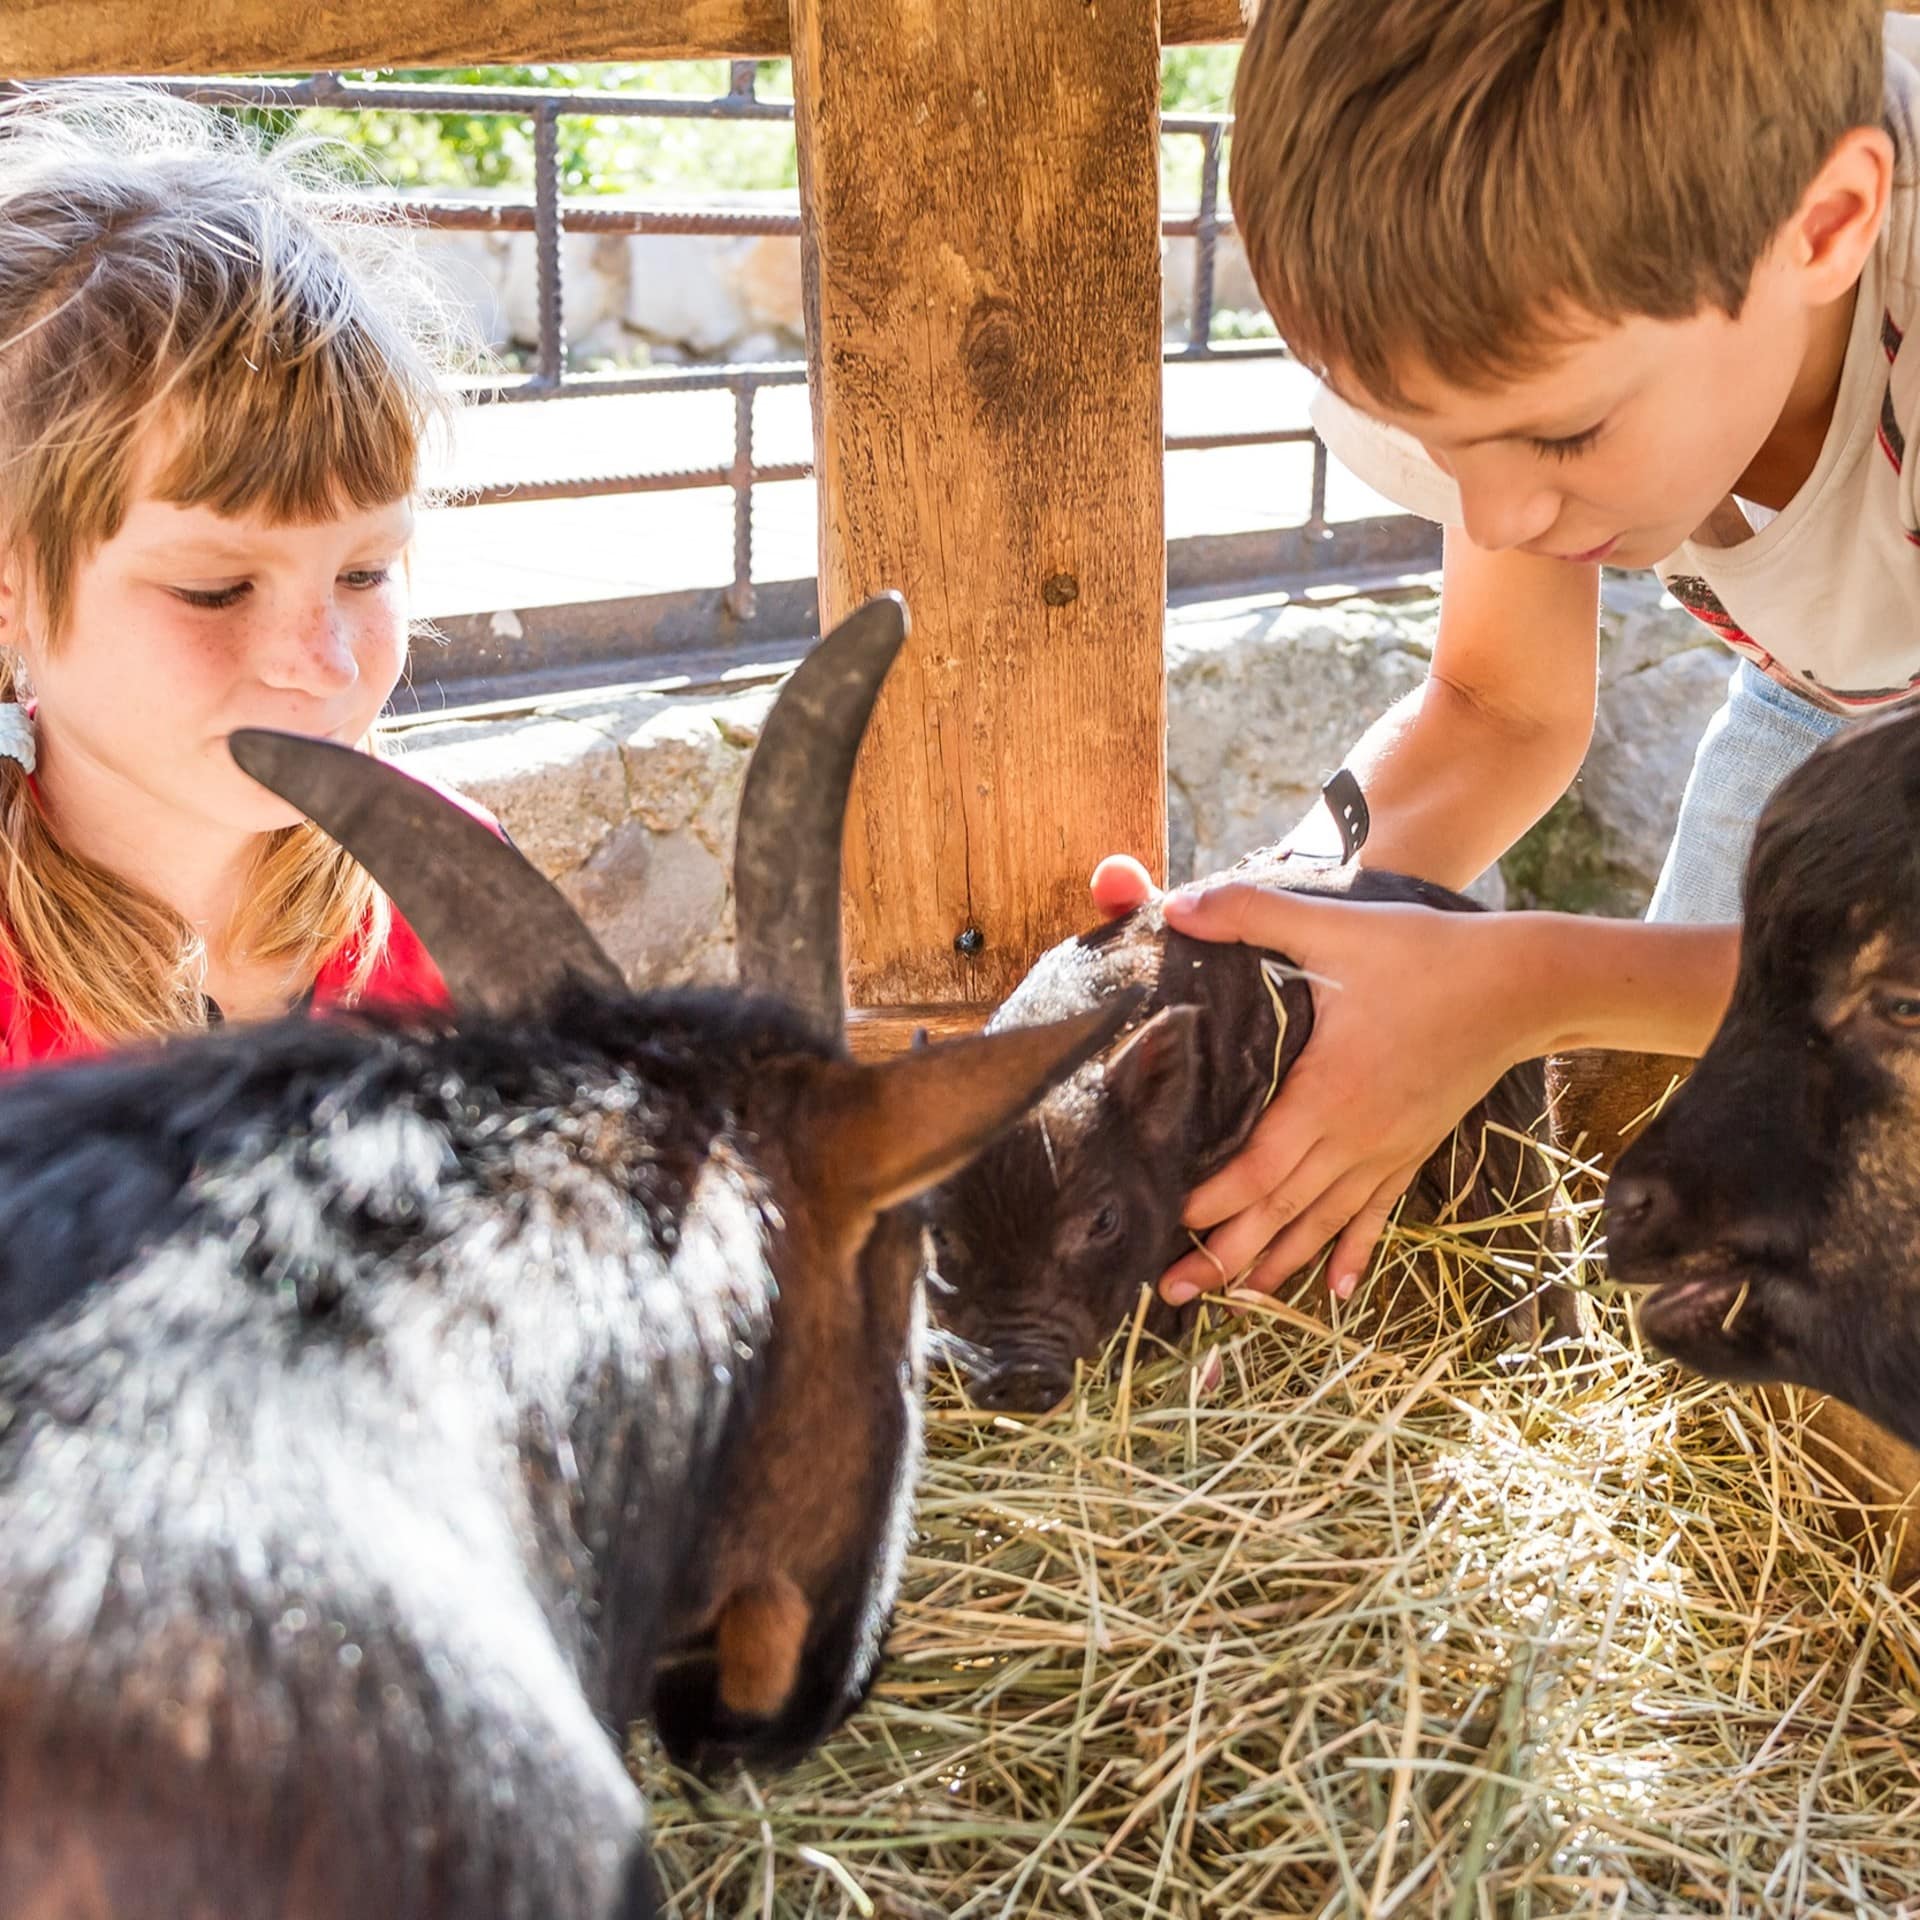 Ein Junge und ein Mädchen kümmern sich um Ziegen und ein Hängebauchschweinchen in einem Stall.